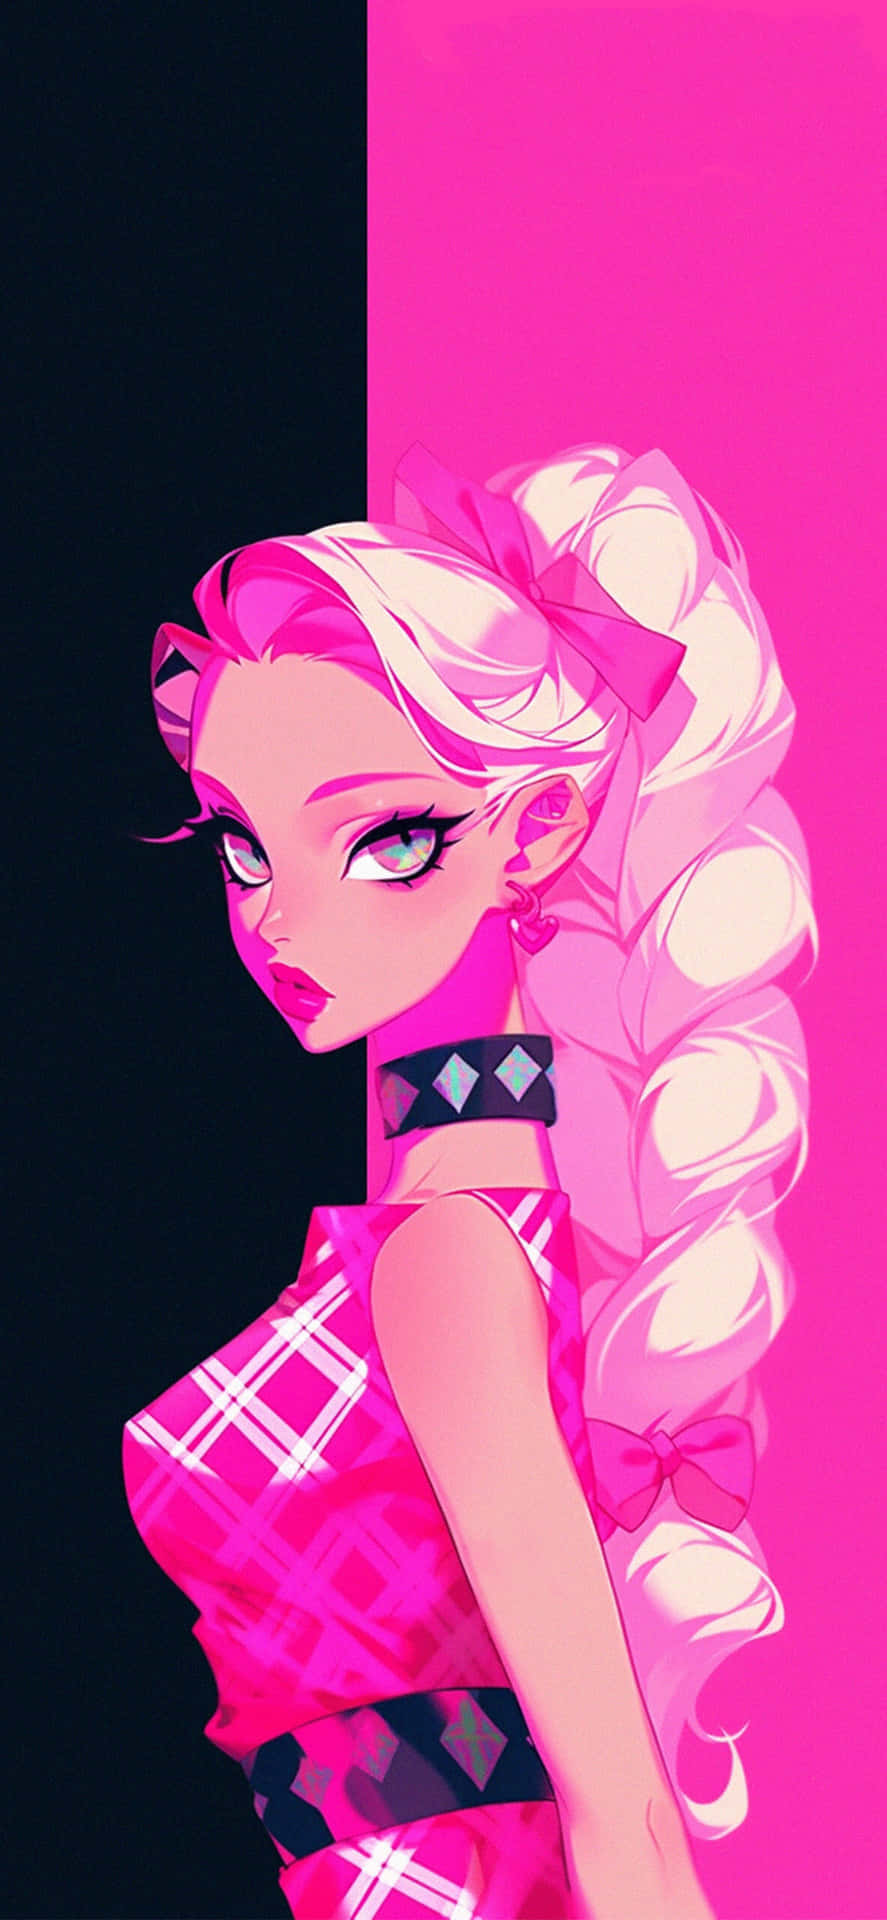 Pink Aesthetic Anime Girl Illustration Wallpaper